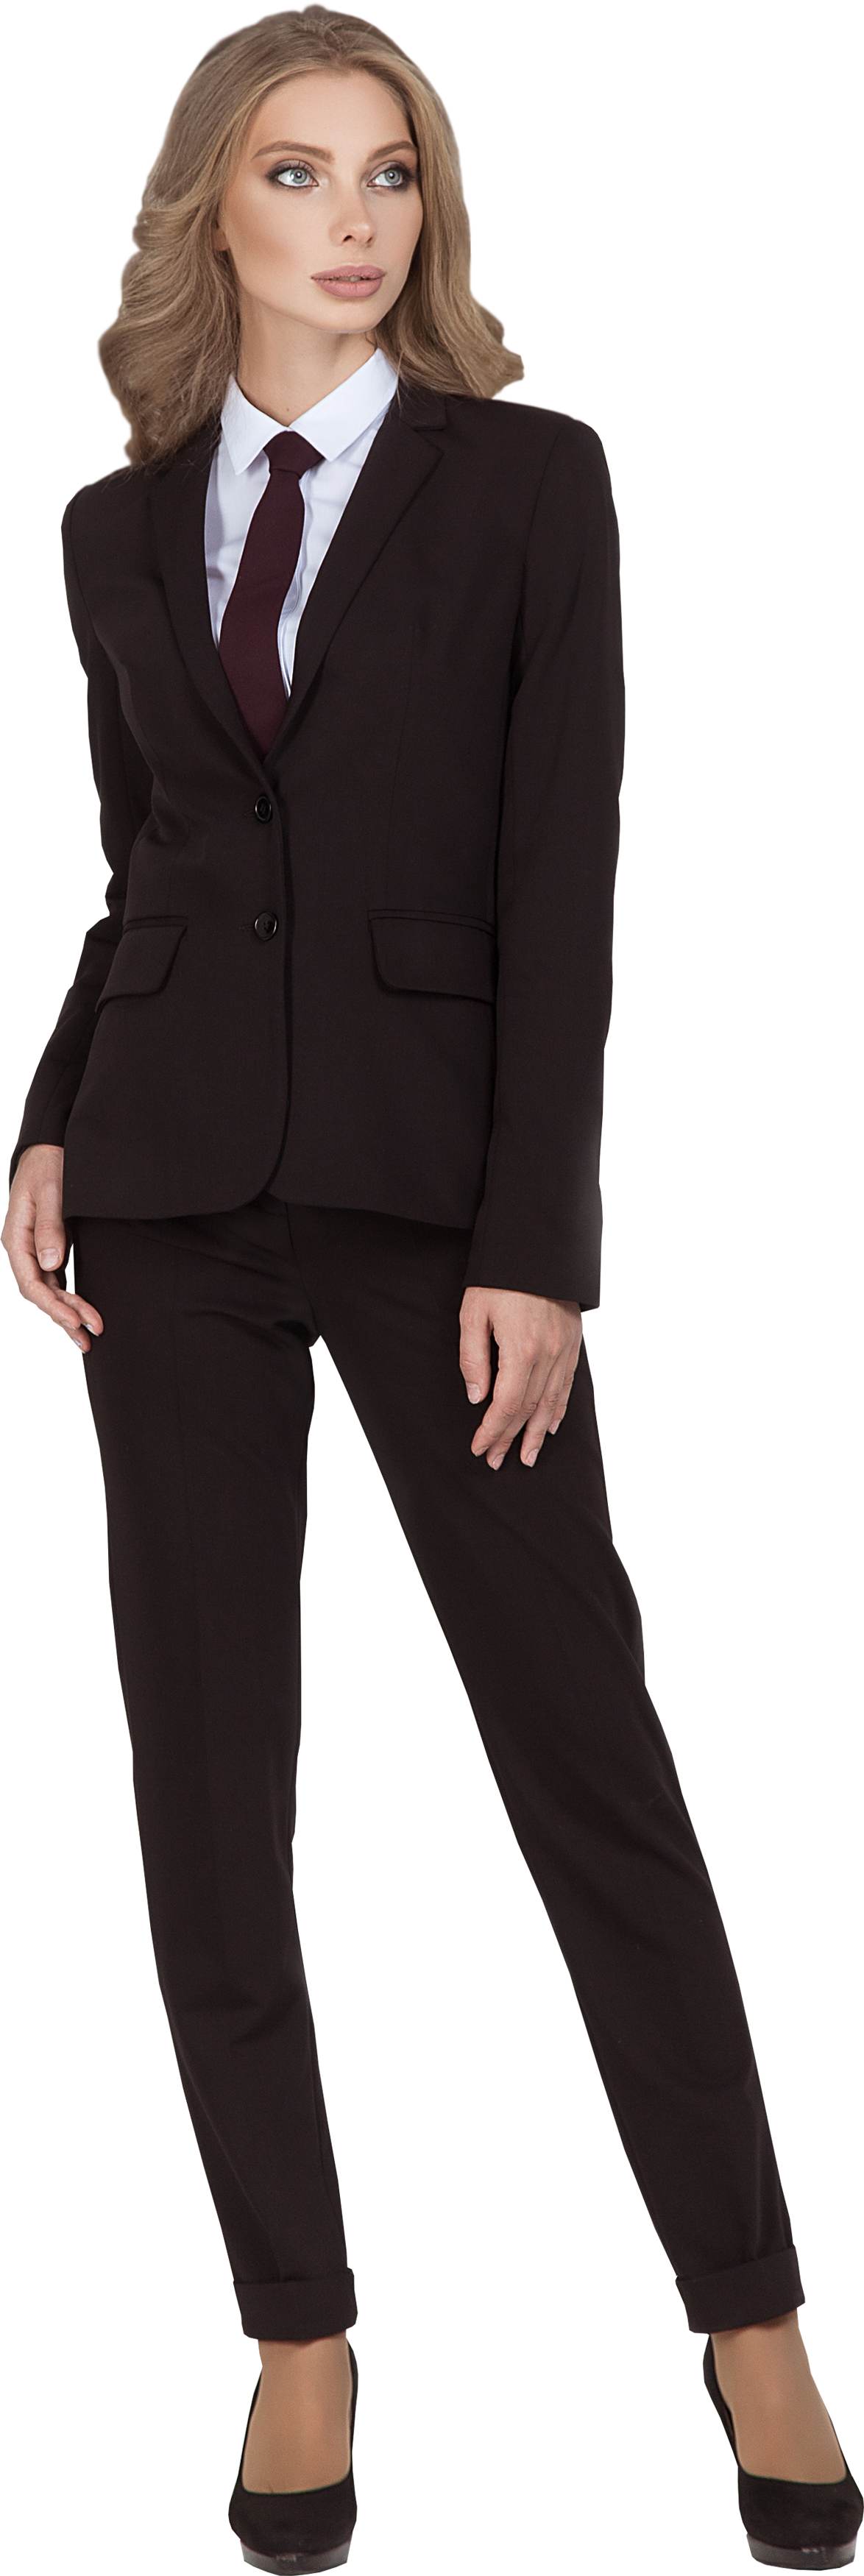  Комплект для администратора DALLAS - жакет / брюки, женский. 0